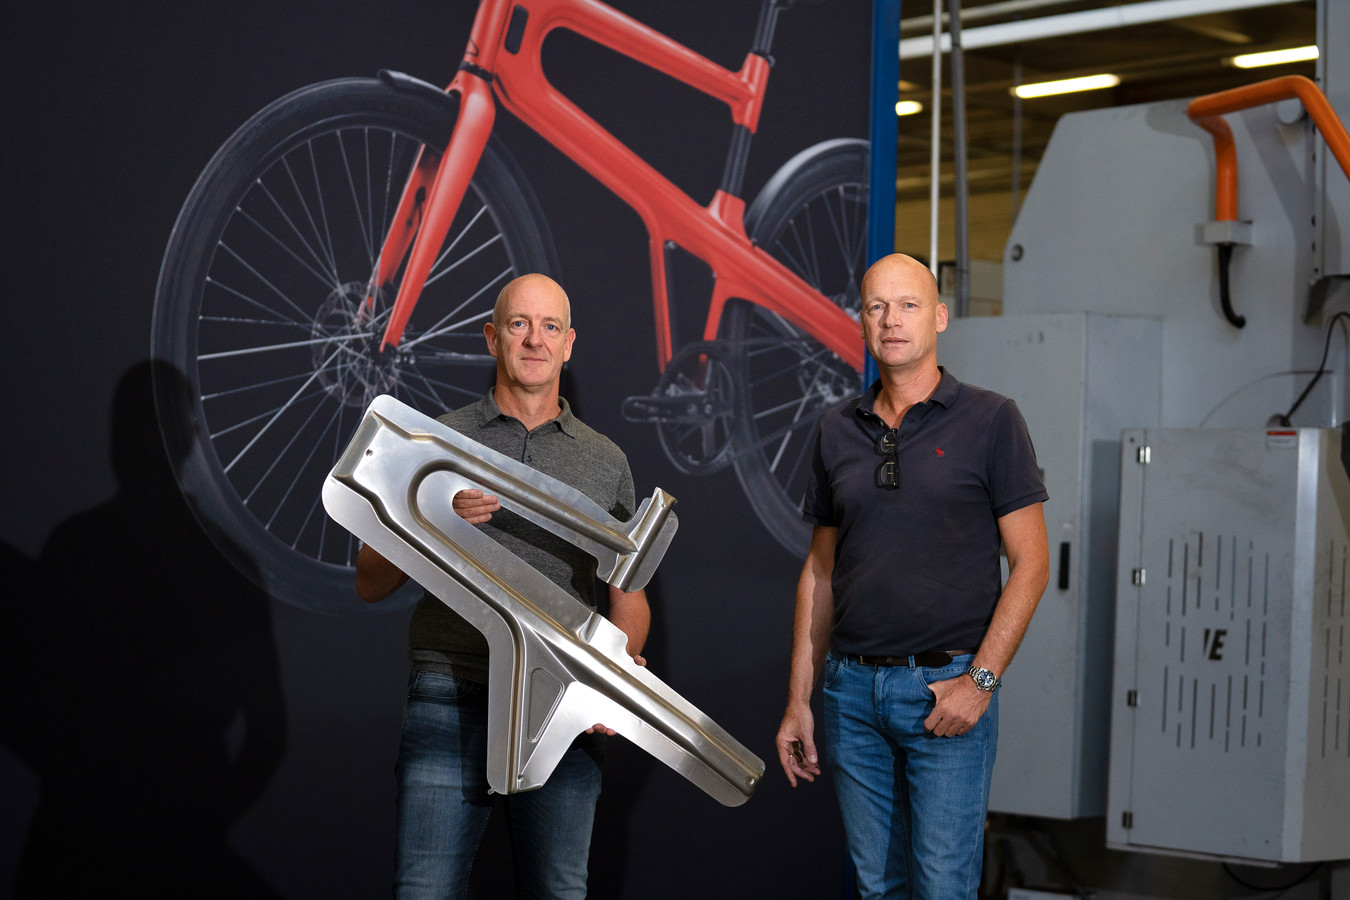 voordelig Controverse Bij naam Phoenix perst fietsframes met rubber; maar ook flitskast of geldautomaat  heeft Eindhovens tintje | Foto | ed.nl